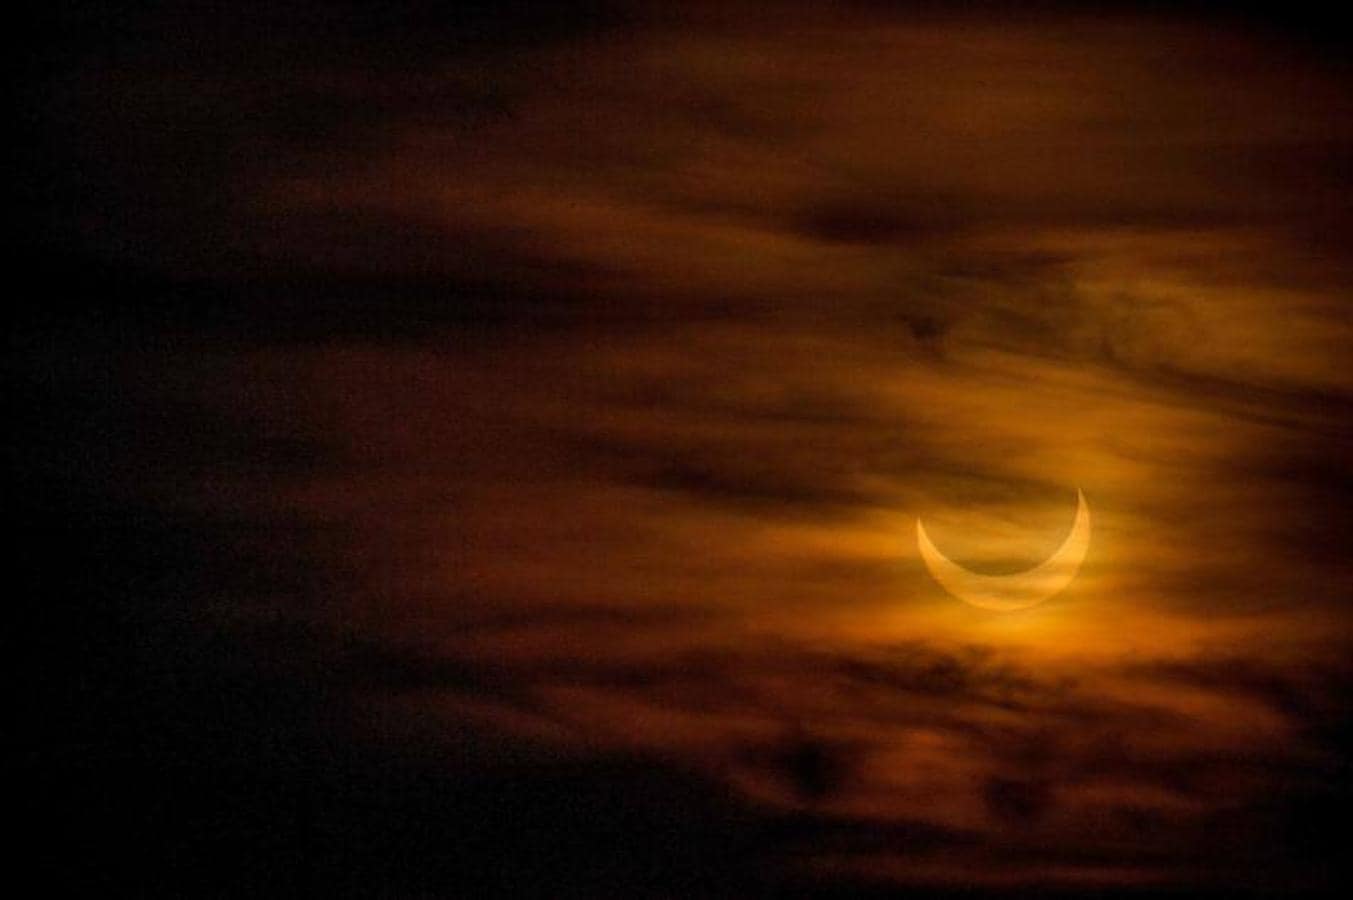 Las mejores imágenes del eclipse de Sol. Imagen tomada desde Massachusetts, en Estados Unidos, donde en algunas partes se ha podido ver una media luna delgada